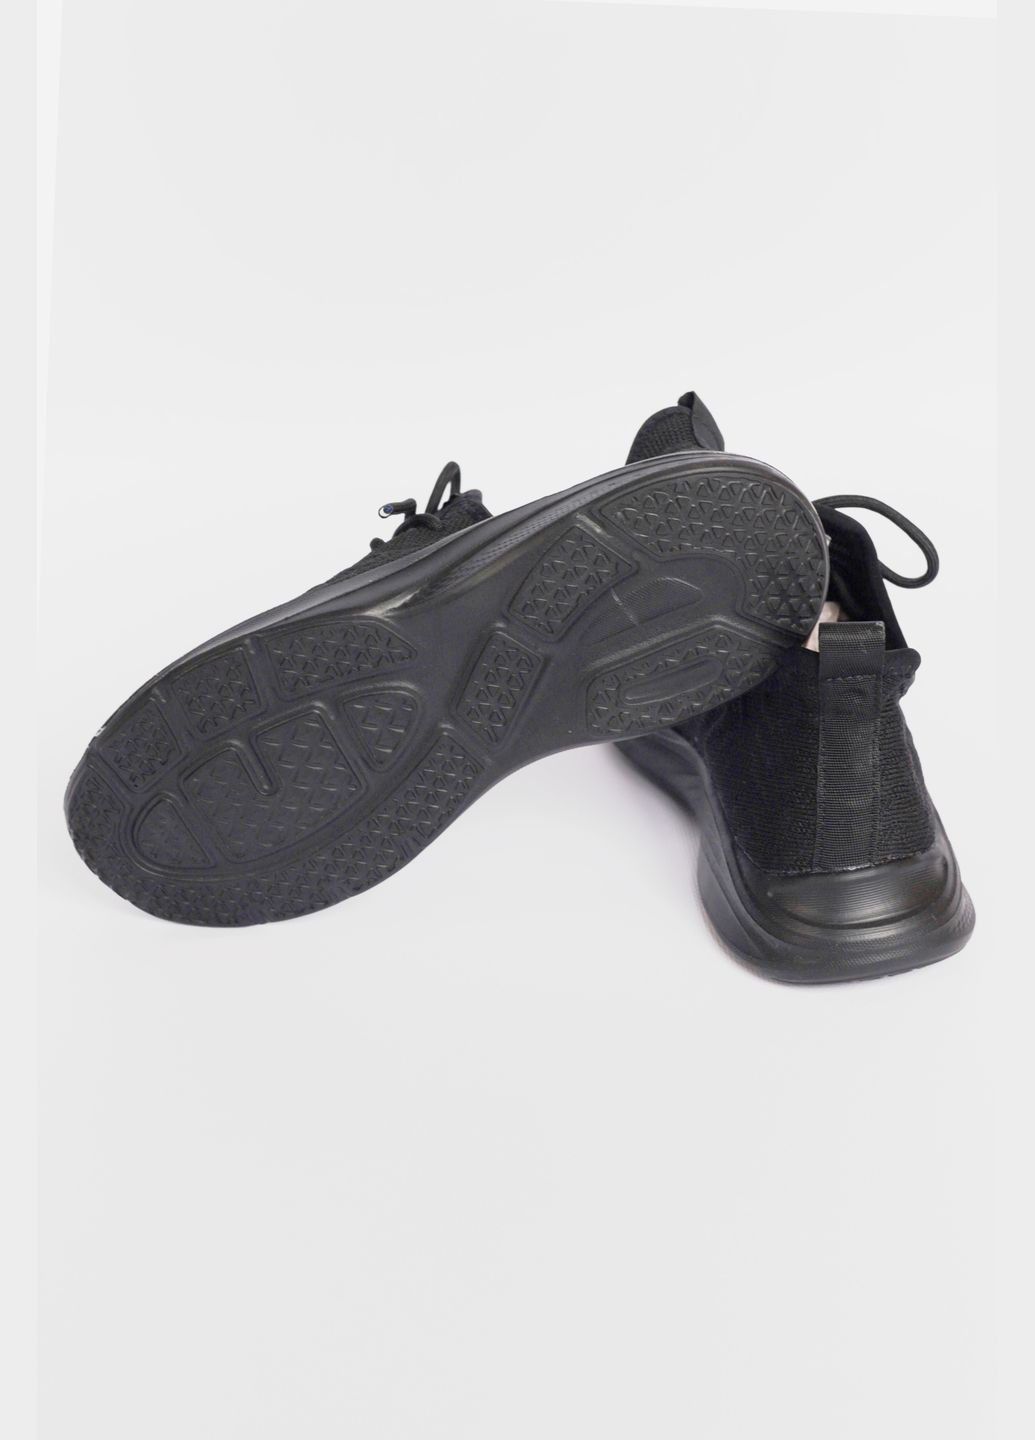 Черные демисезонные кроссовки женские текстиль черного цвета на шнуровке Let's Shop